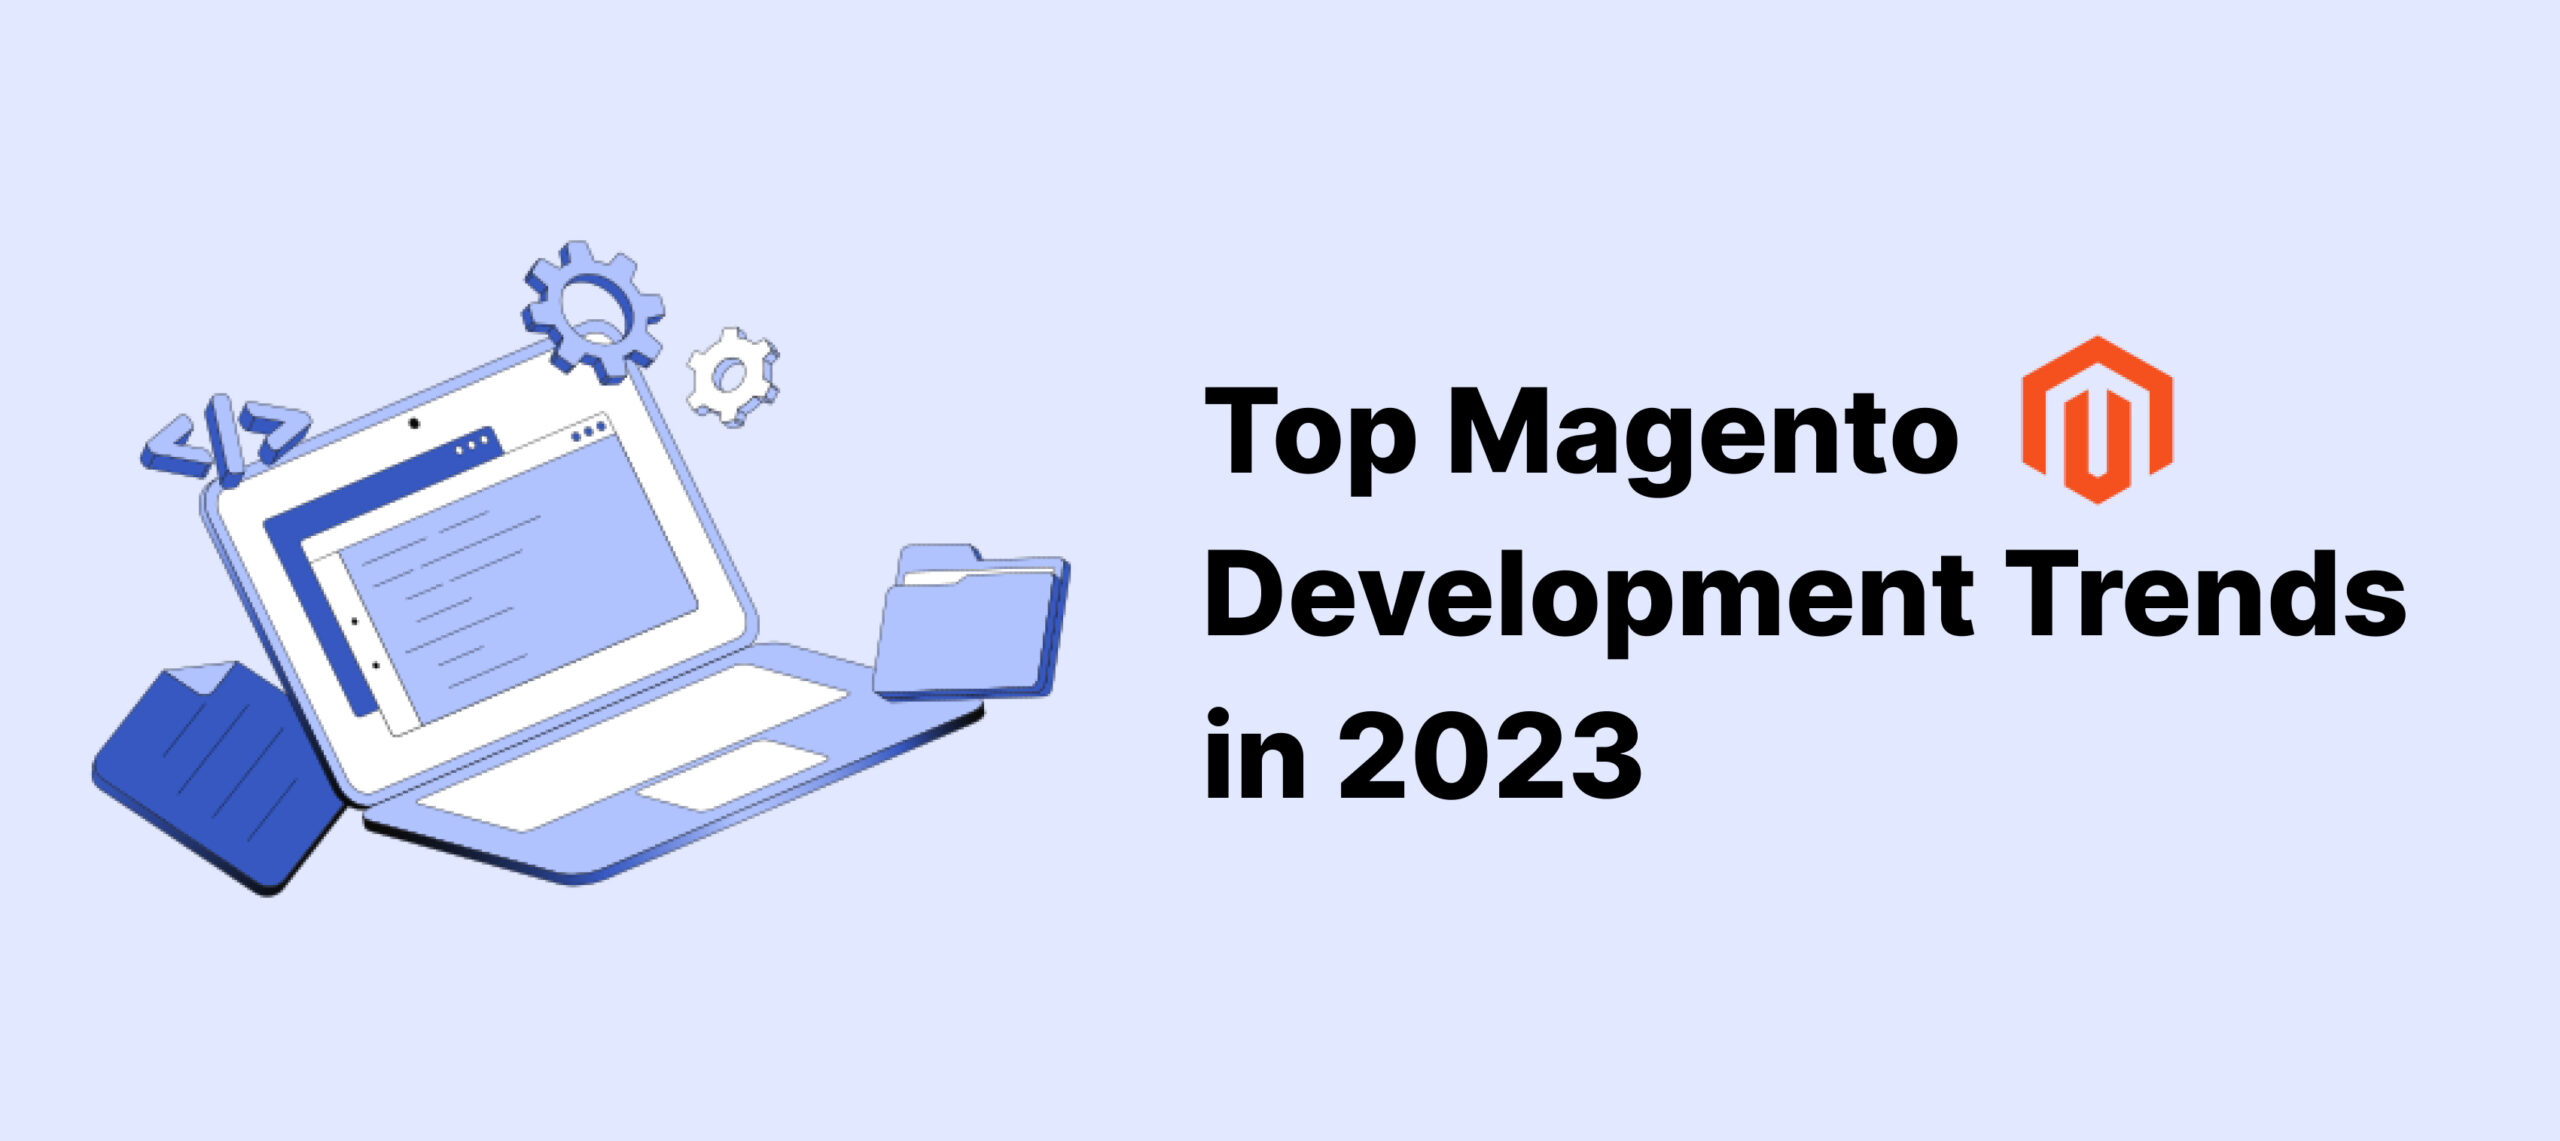  Top Magento Development Trends in 2023